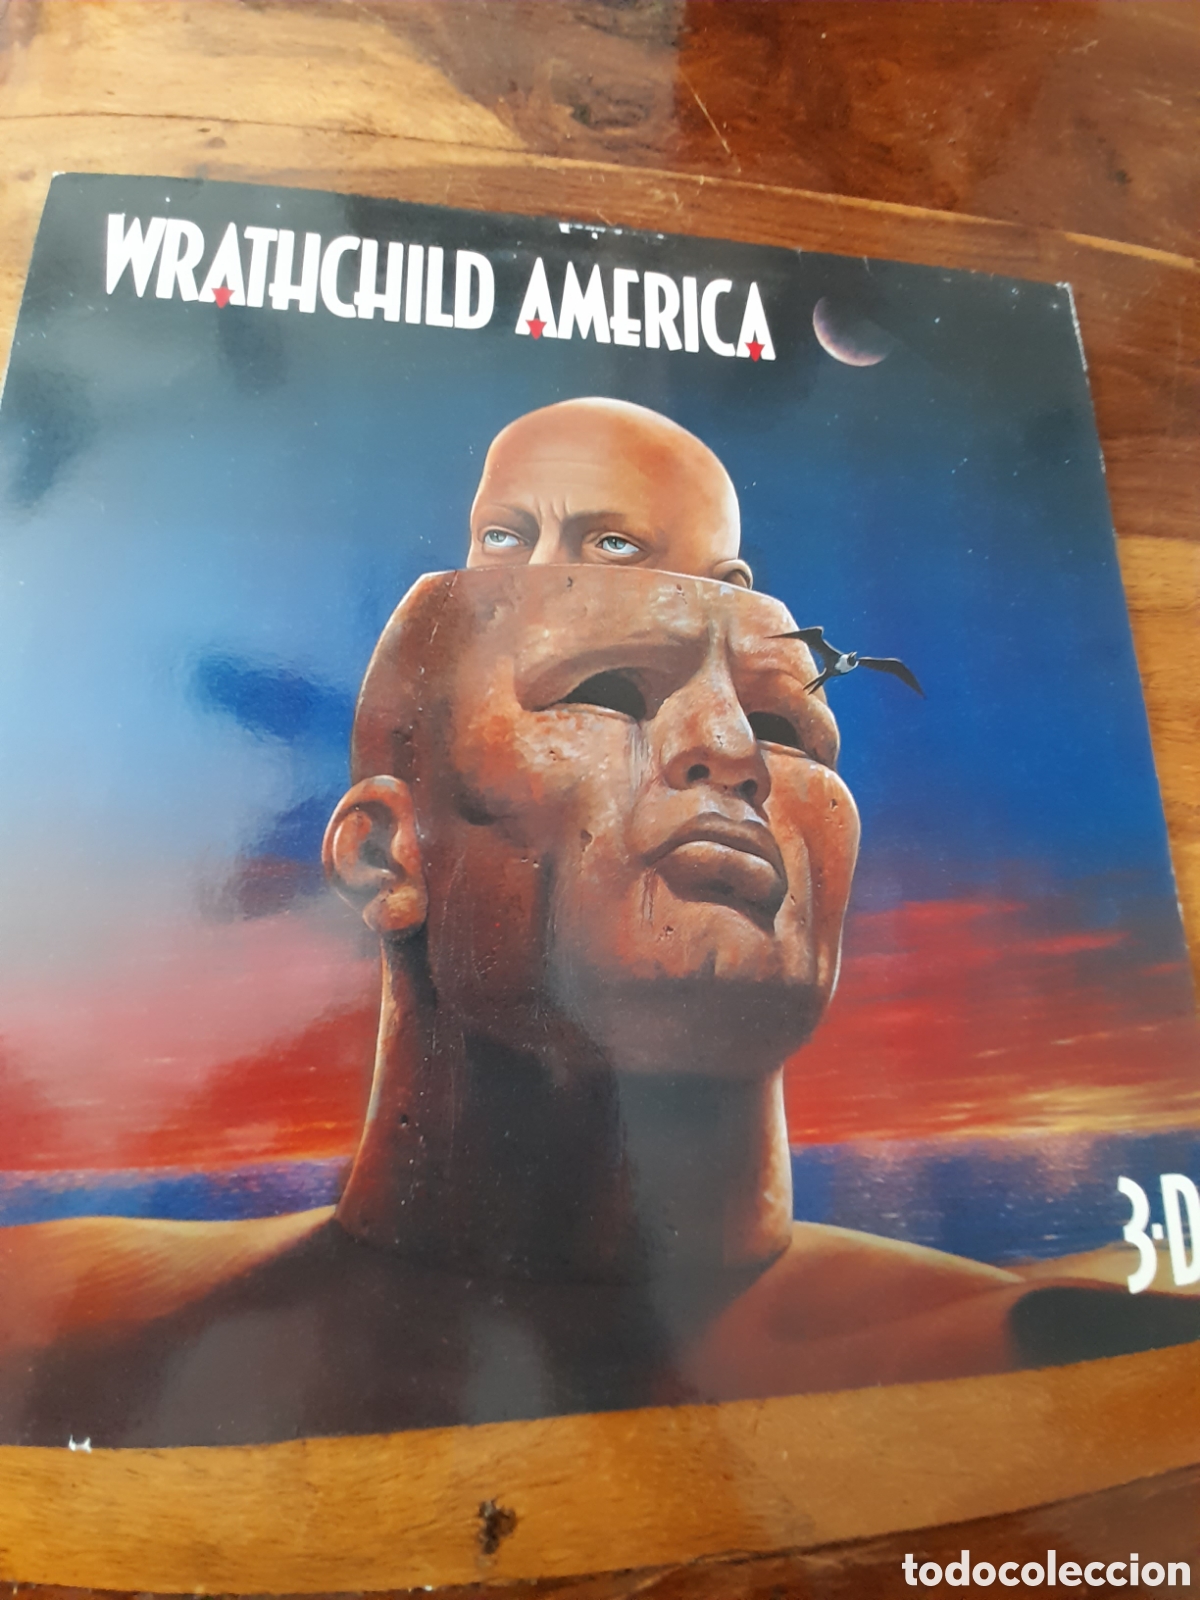 Wrathchild America – 3-D（国内盤） - 洋楽